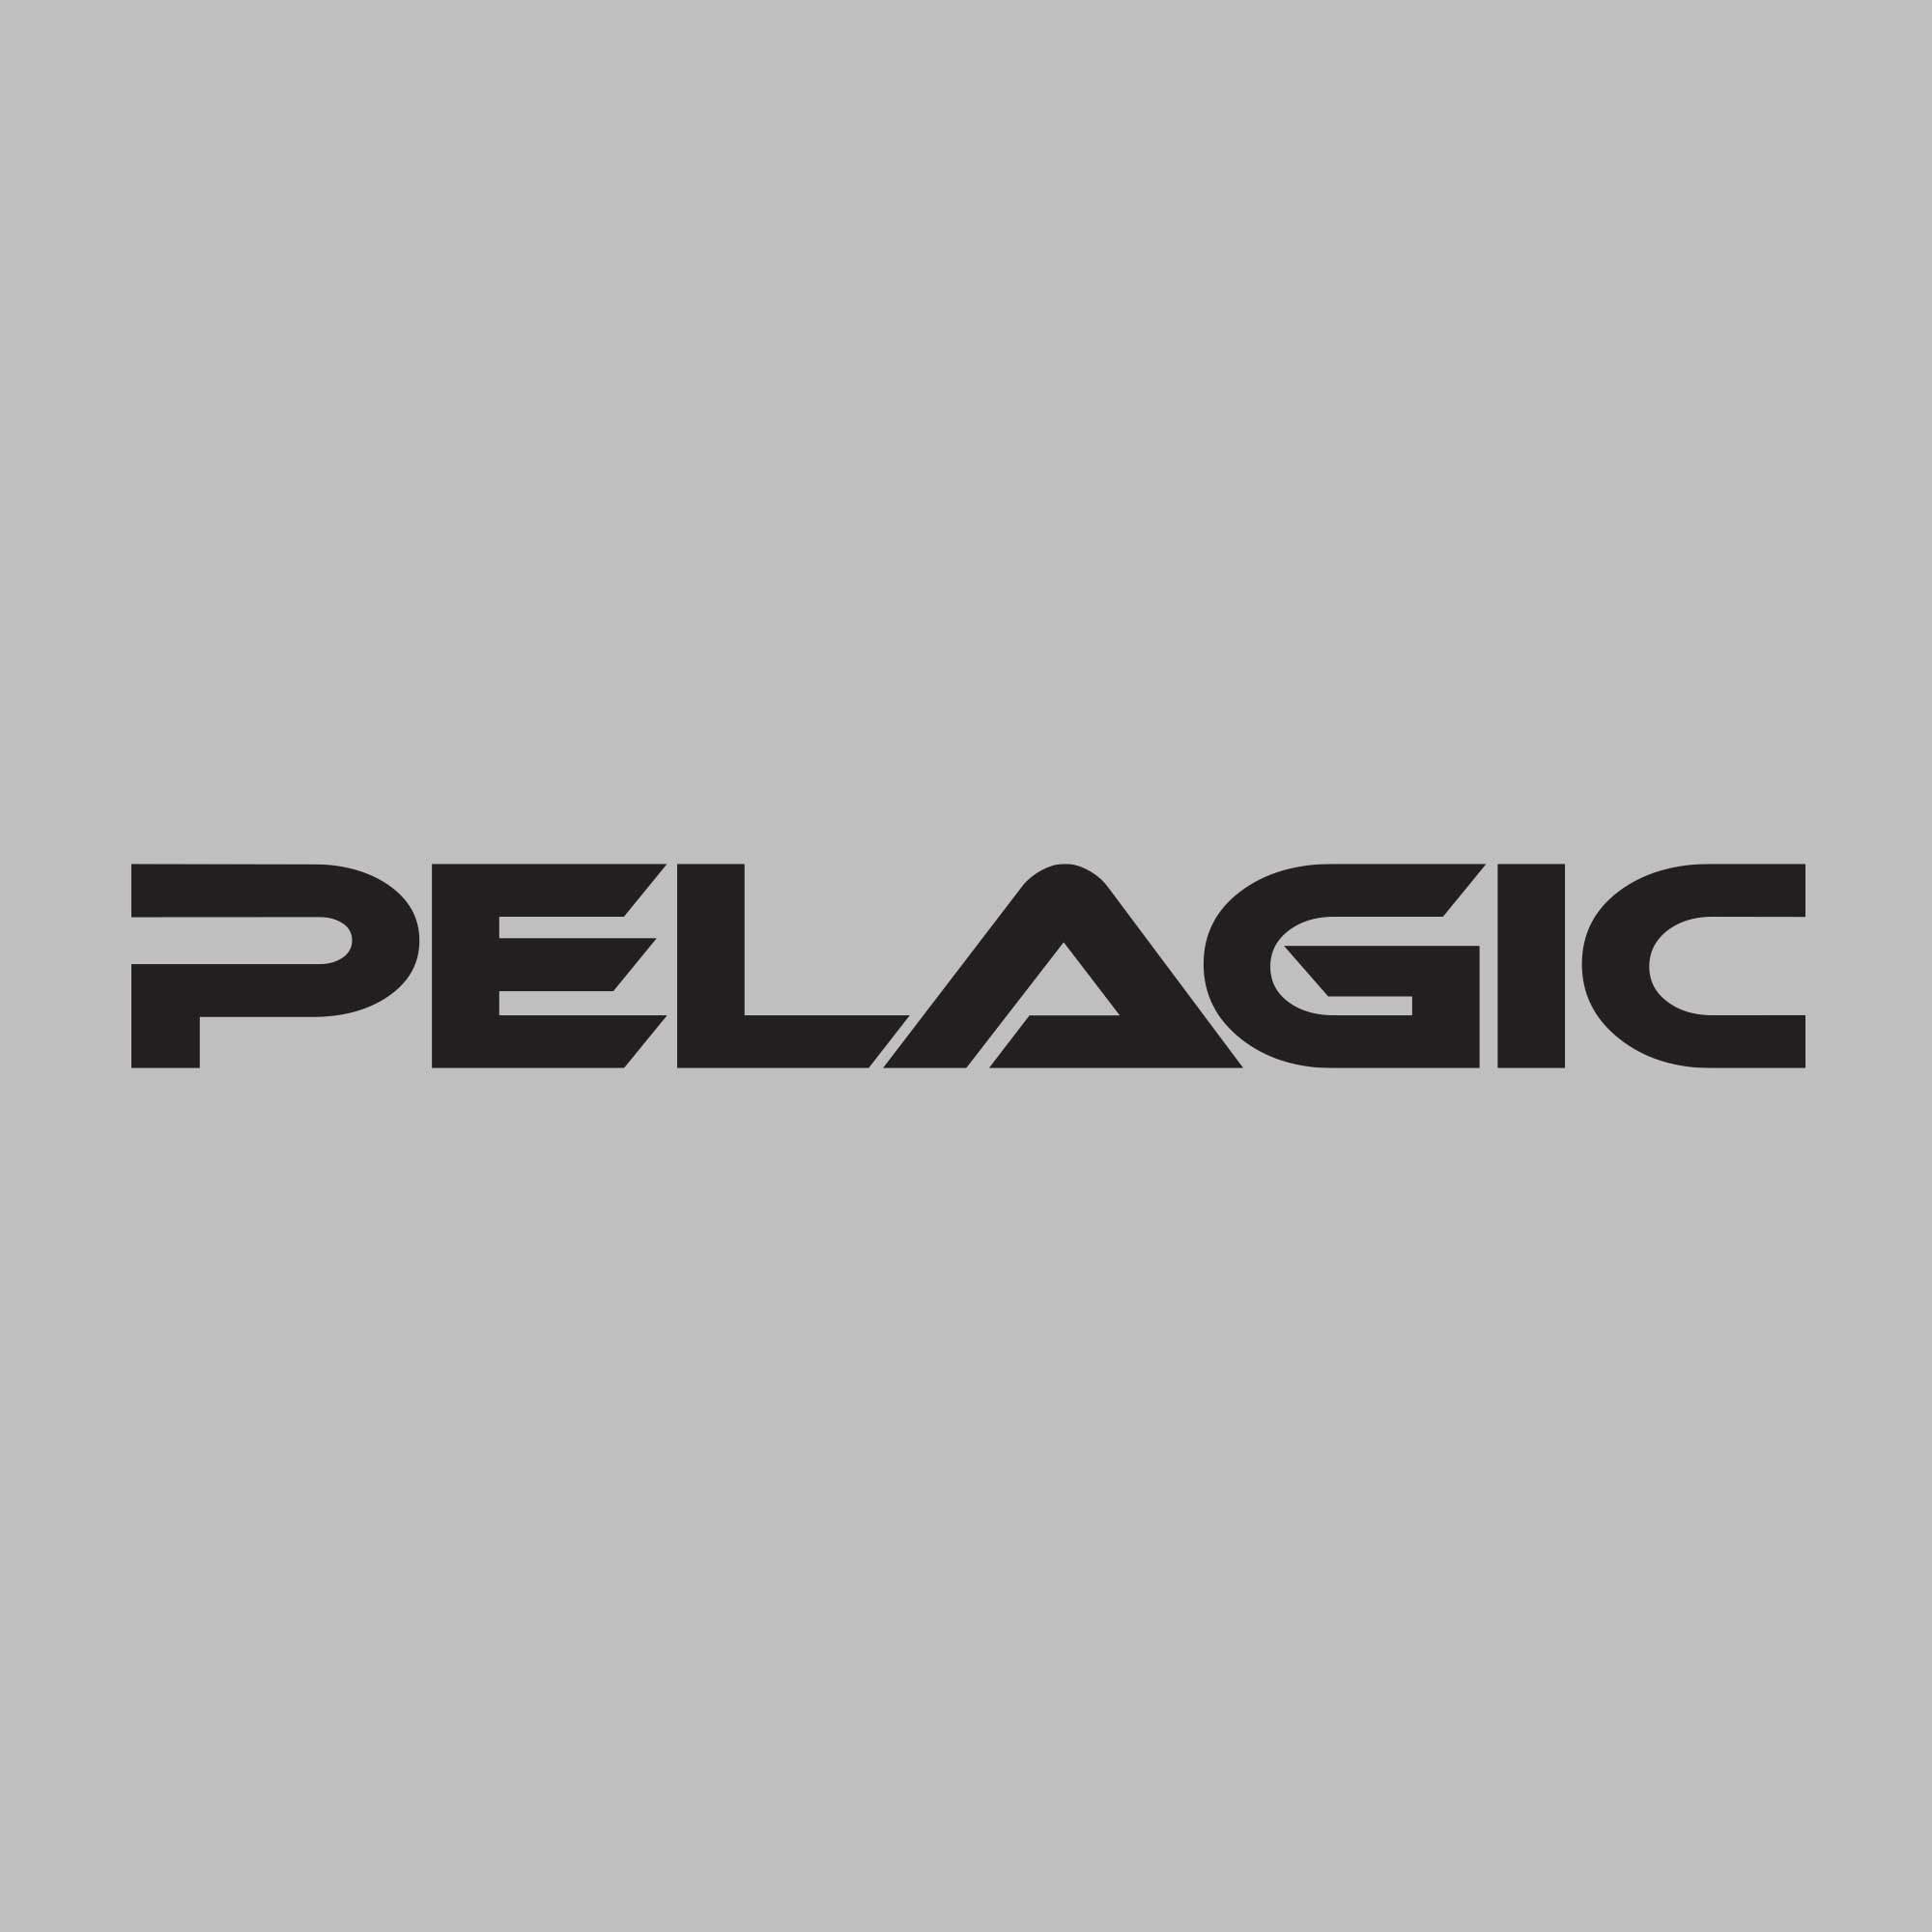 Pelagic